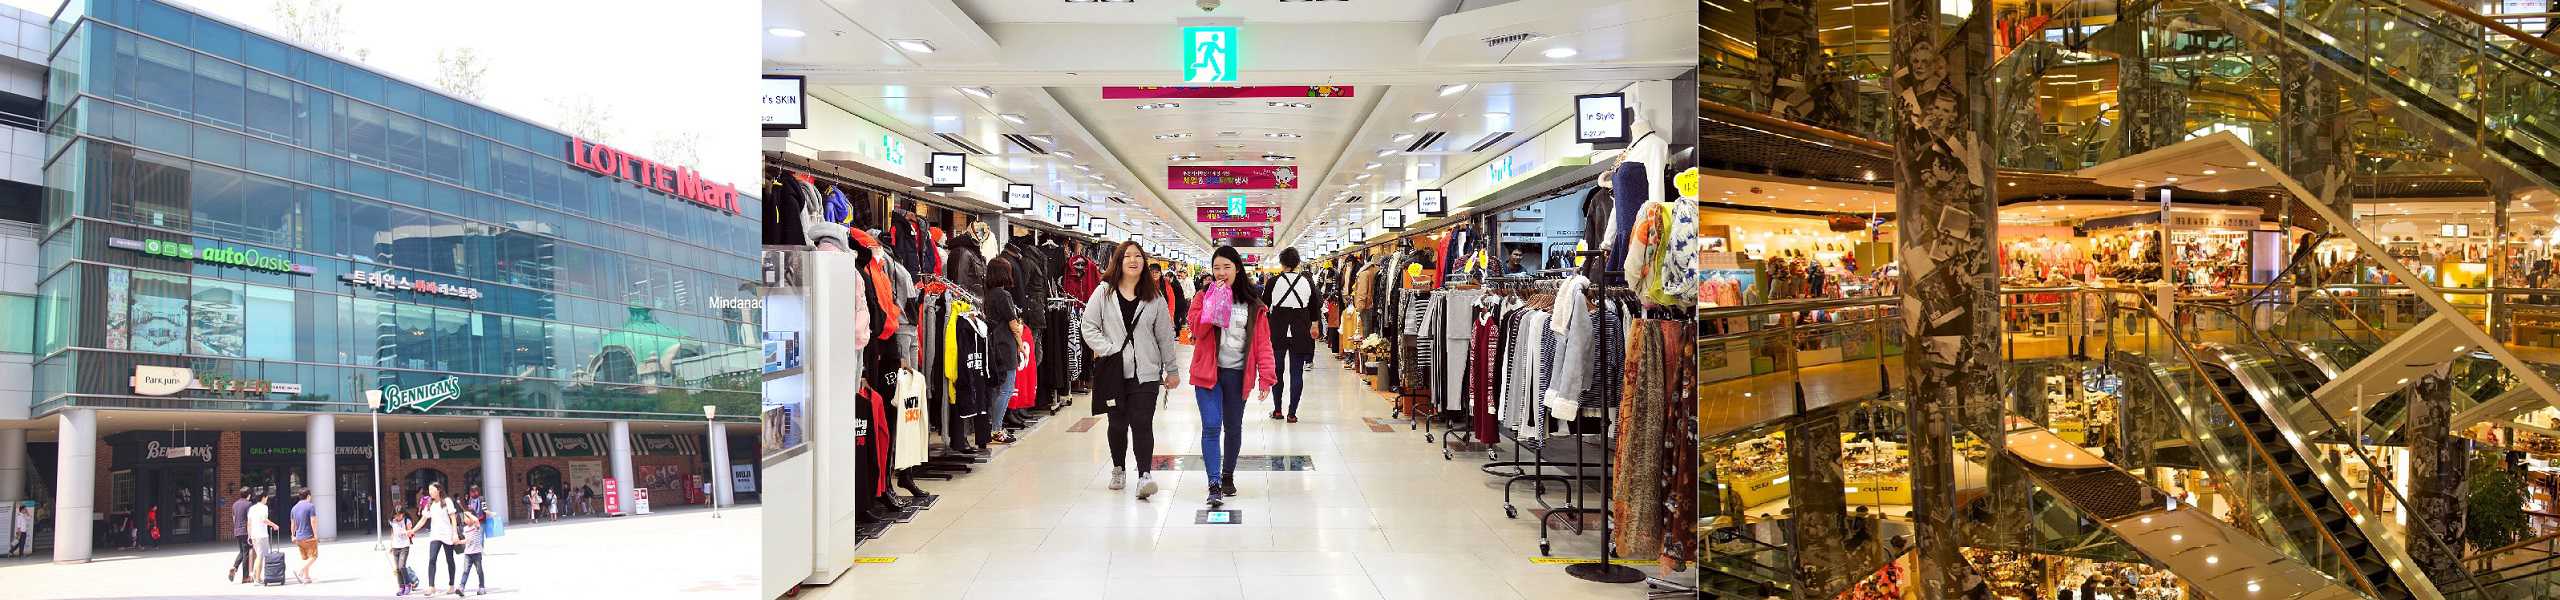 Trung tâm thương mại, mua sắm cao cấp ở Hàn Quốc